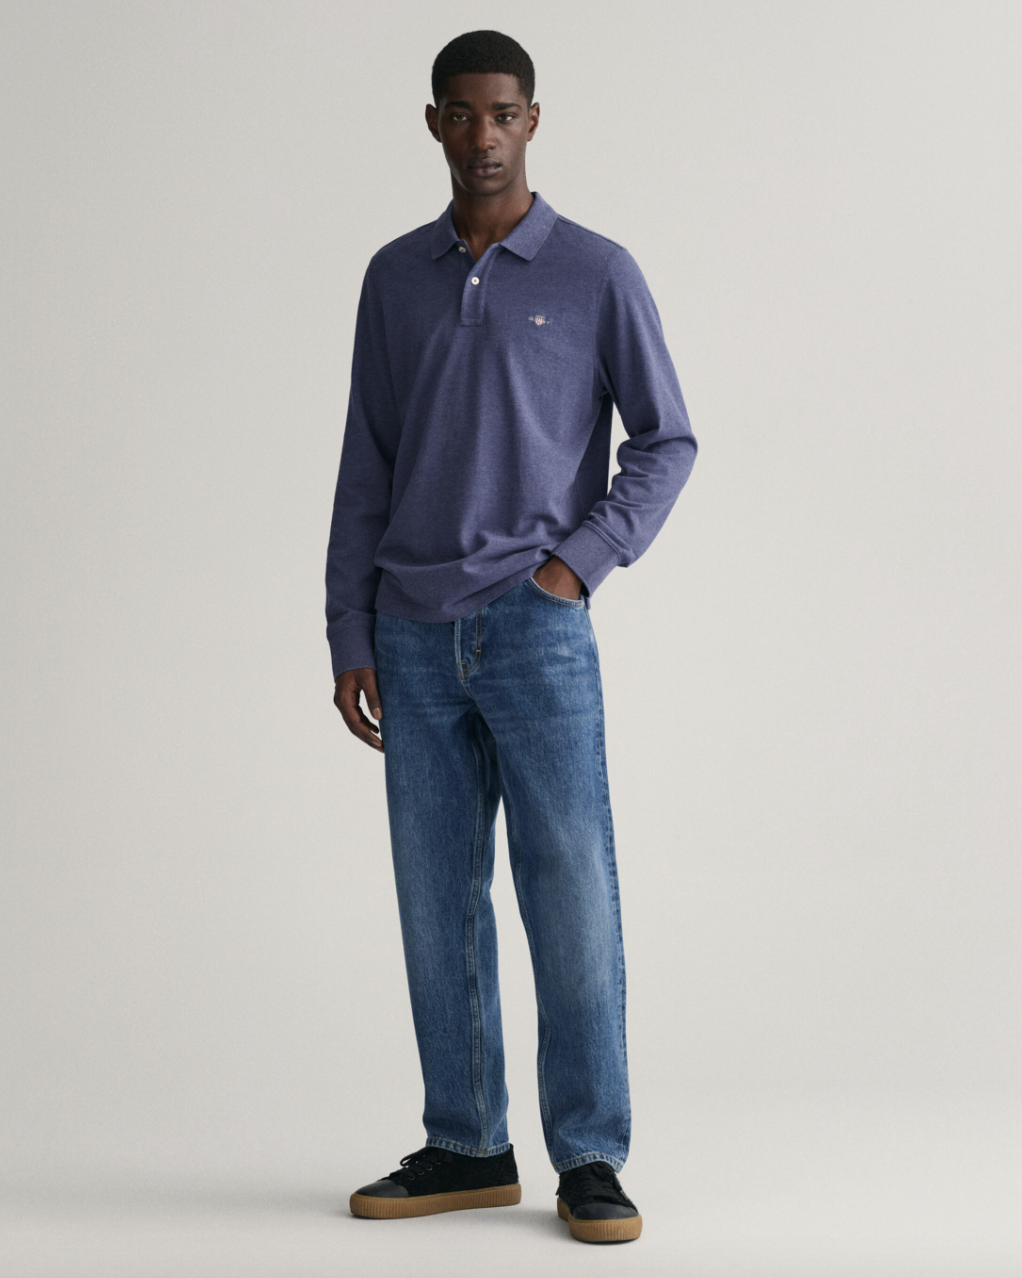 Gant Langermet Pique Bomull Blå helfigur med jeans